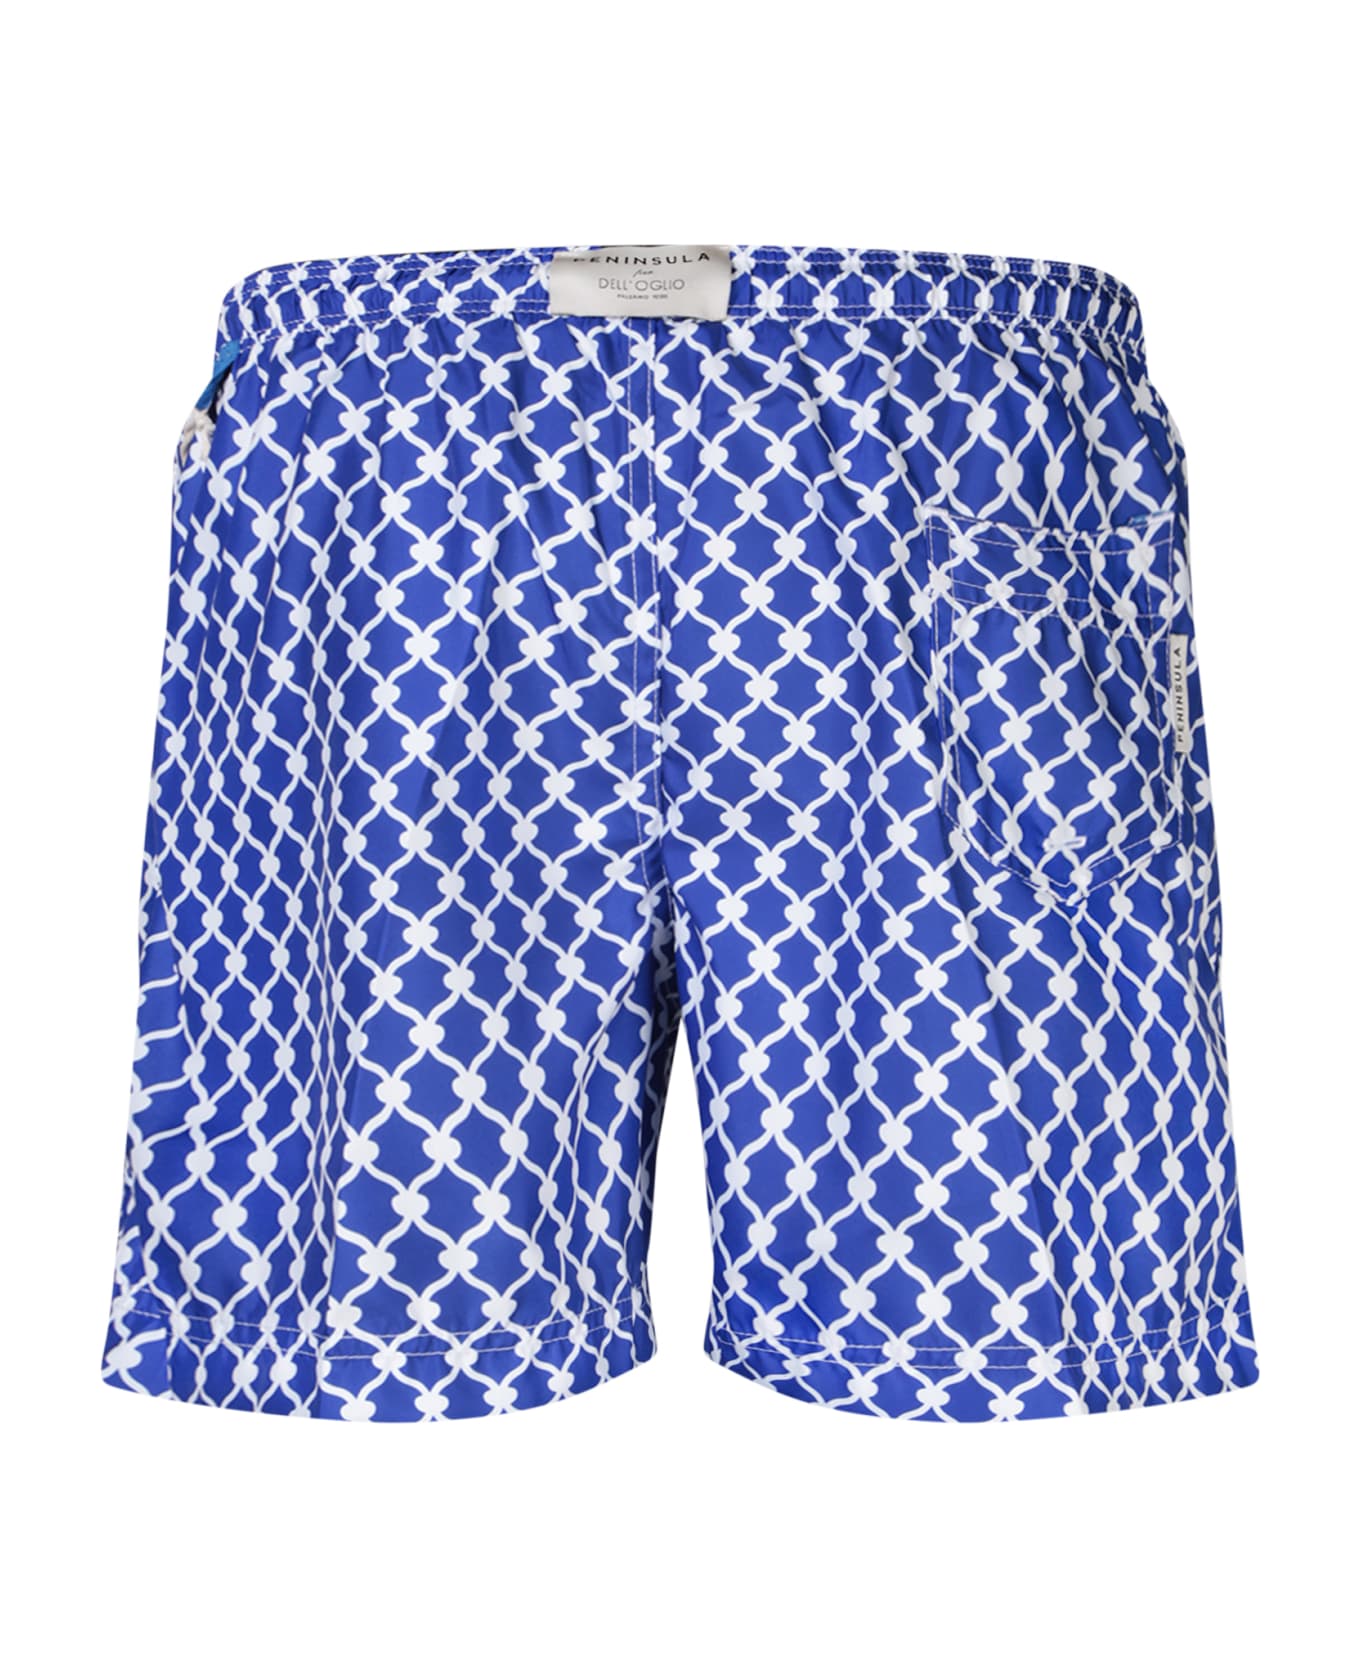 Peninsula Swimwear Patterned Blue/white Boxer Swim Shorts By Peninsula - White